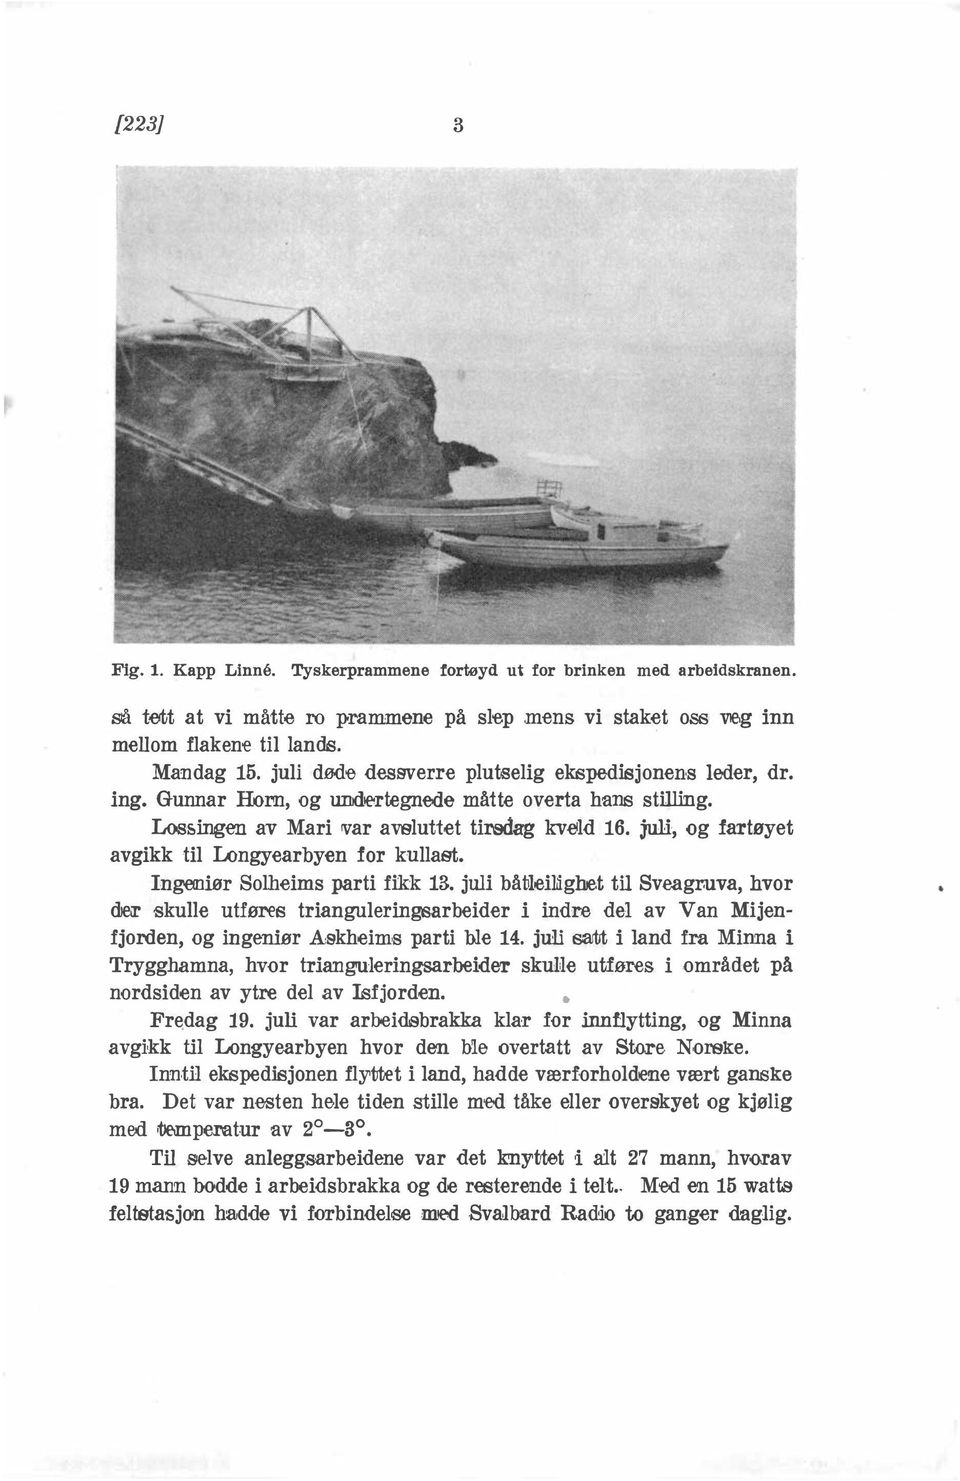 kullast Ingeniør Solheims parti fikk 13 juli båtleiliiglret til Sveagruva, hvor djeæ skulle utføres trianguleringsarbeider i indre del av Van Mijenfjorden, og ingeniør A:skheims parti ble 14 juli